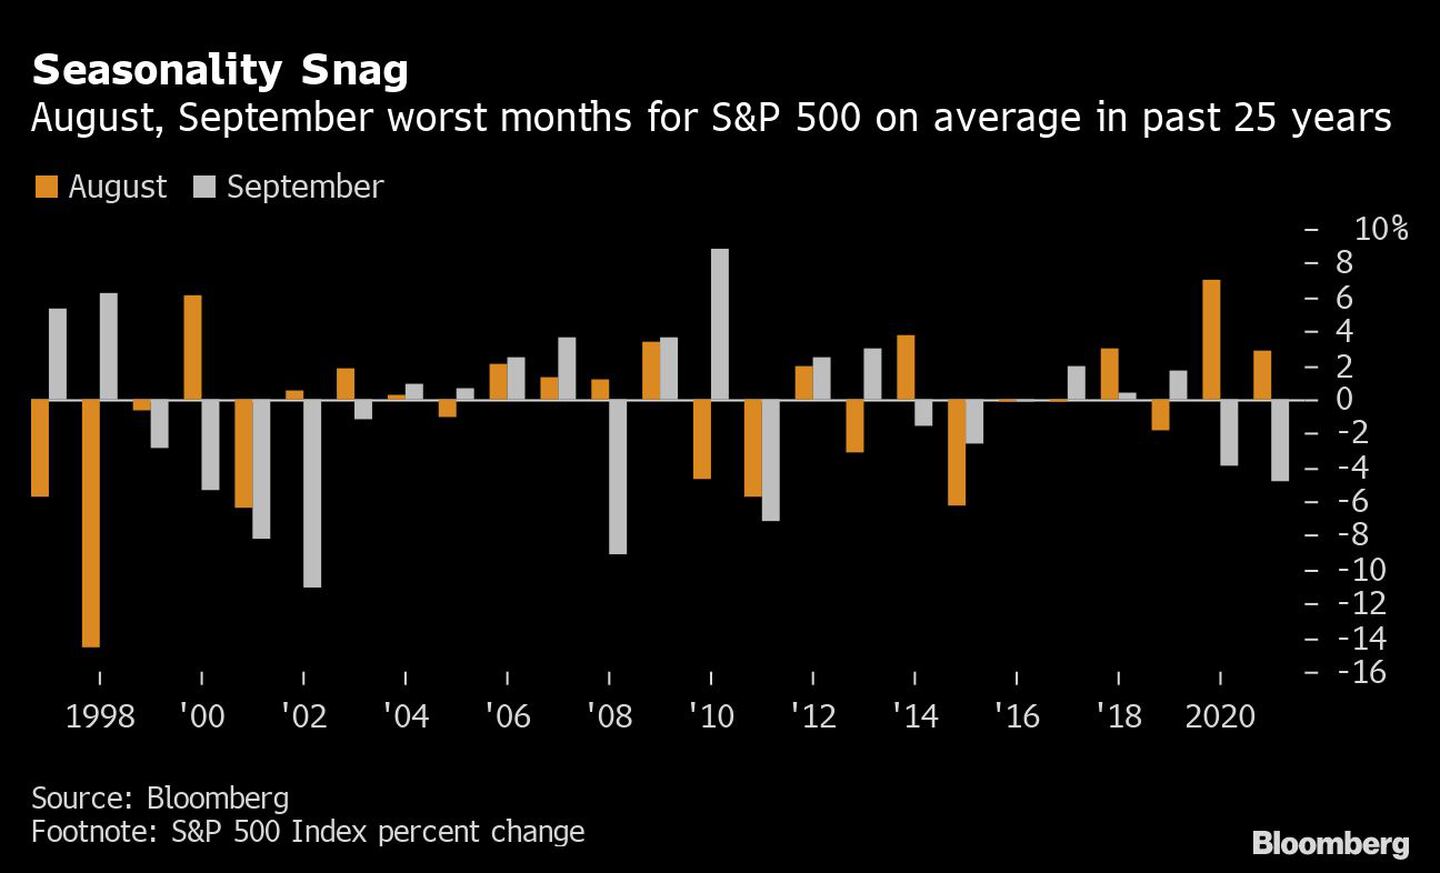 En promedio, agosto y septiembre son los peores meses para el S&P 500 desde hace 25 añosdfd